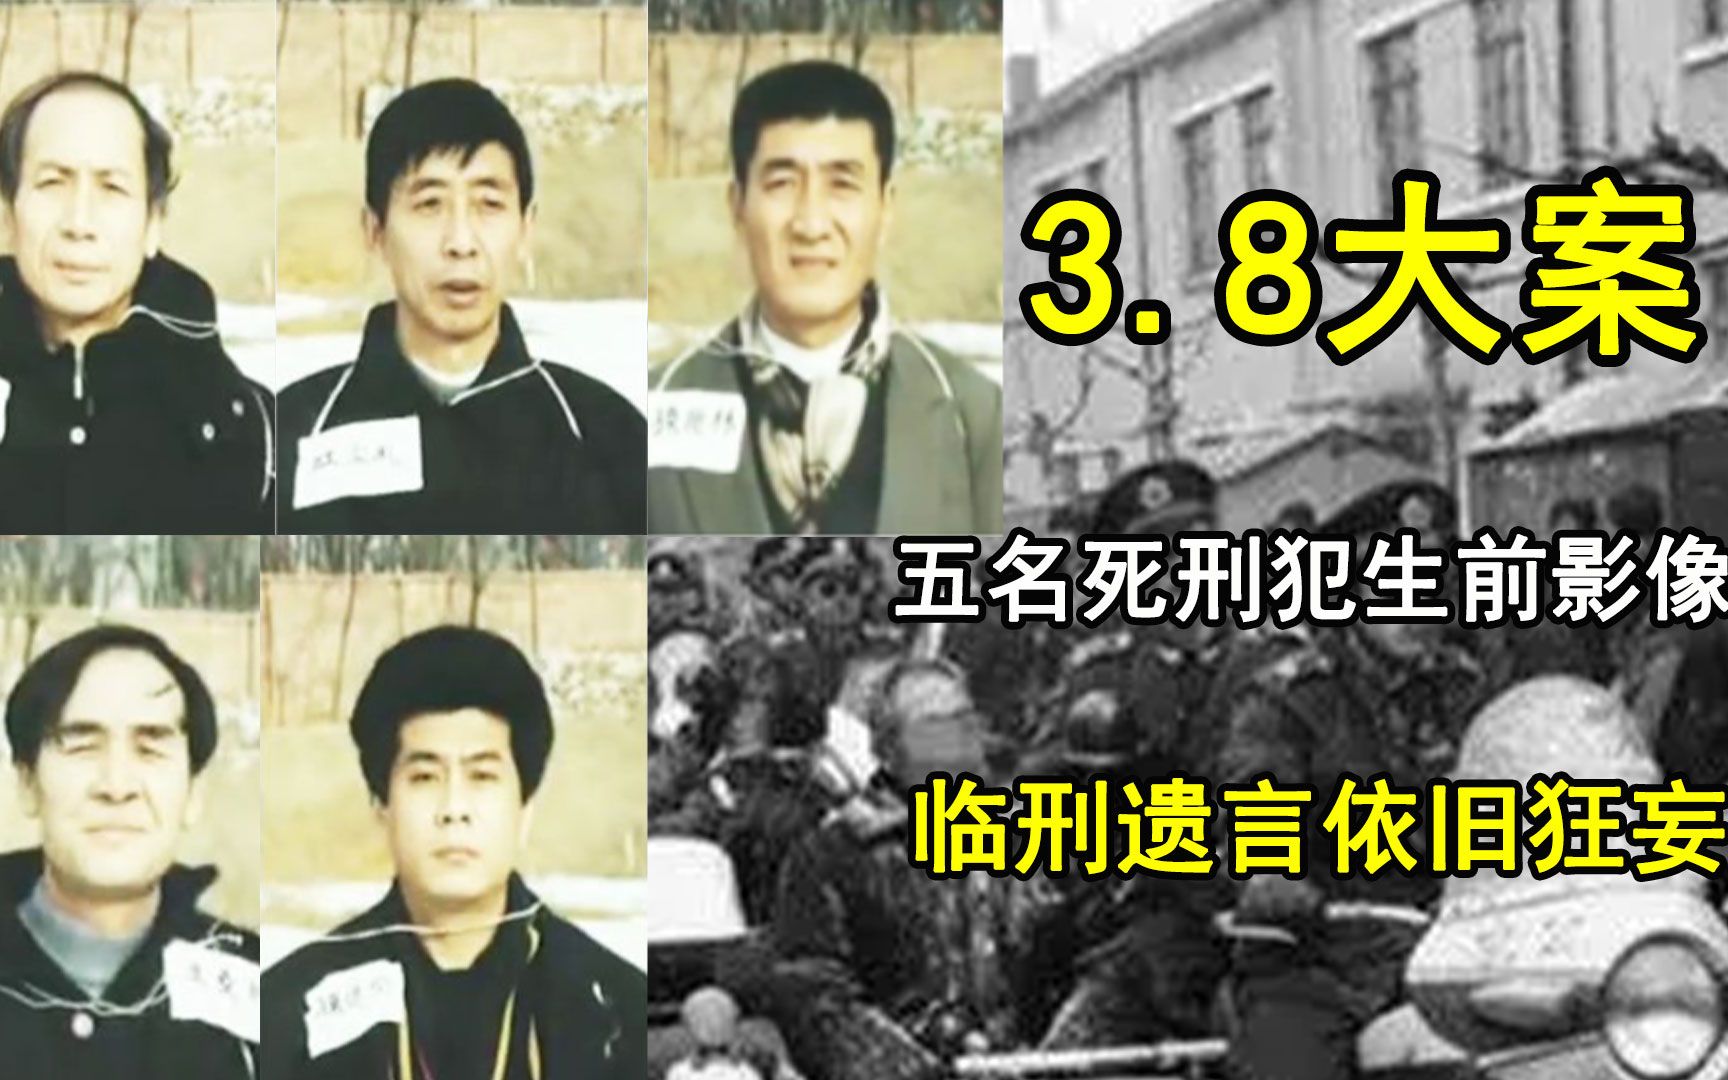 1999年沈阳38大案,五名死刑犯生前影像,临刑的遗言依旧十分狂妄